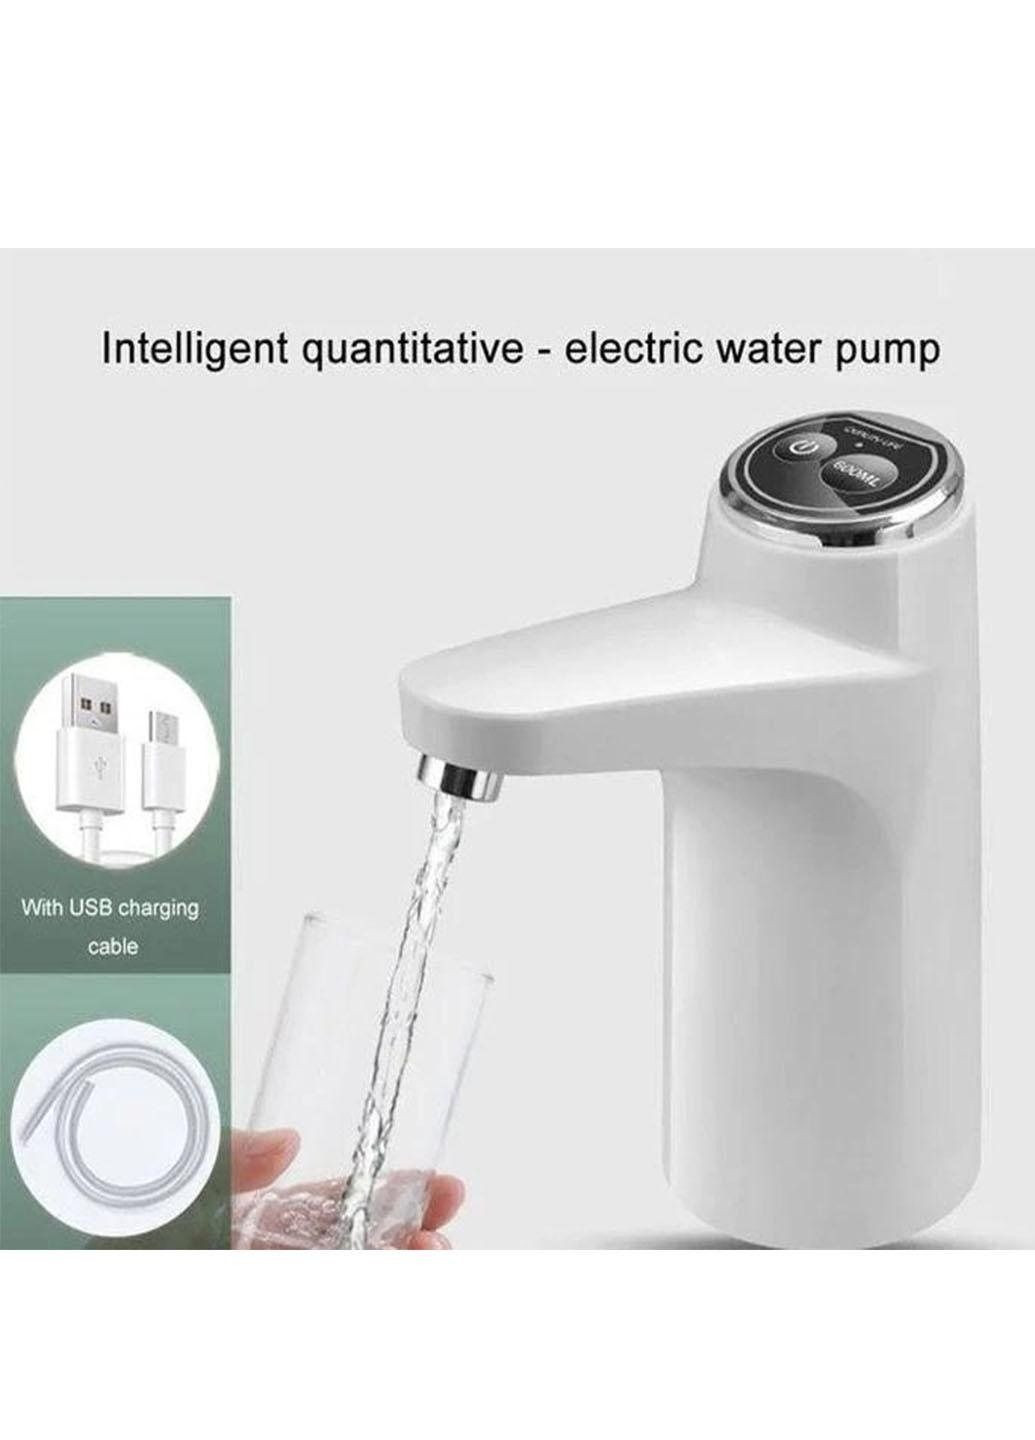 Електрична сенсорна помпа для води Aqua Pump Elite на акумуляторі 2 режими набору води Good Idea mag-623 (290187081)